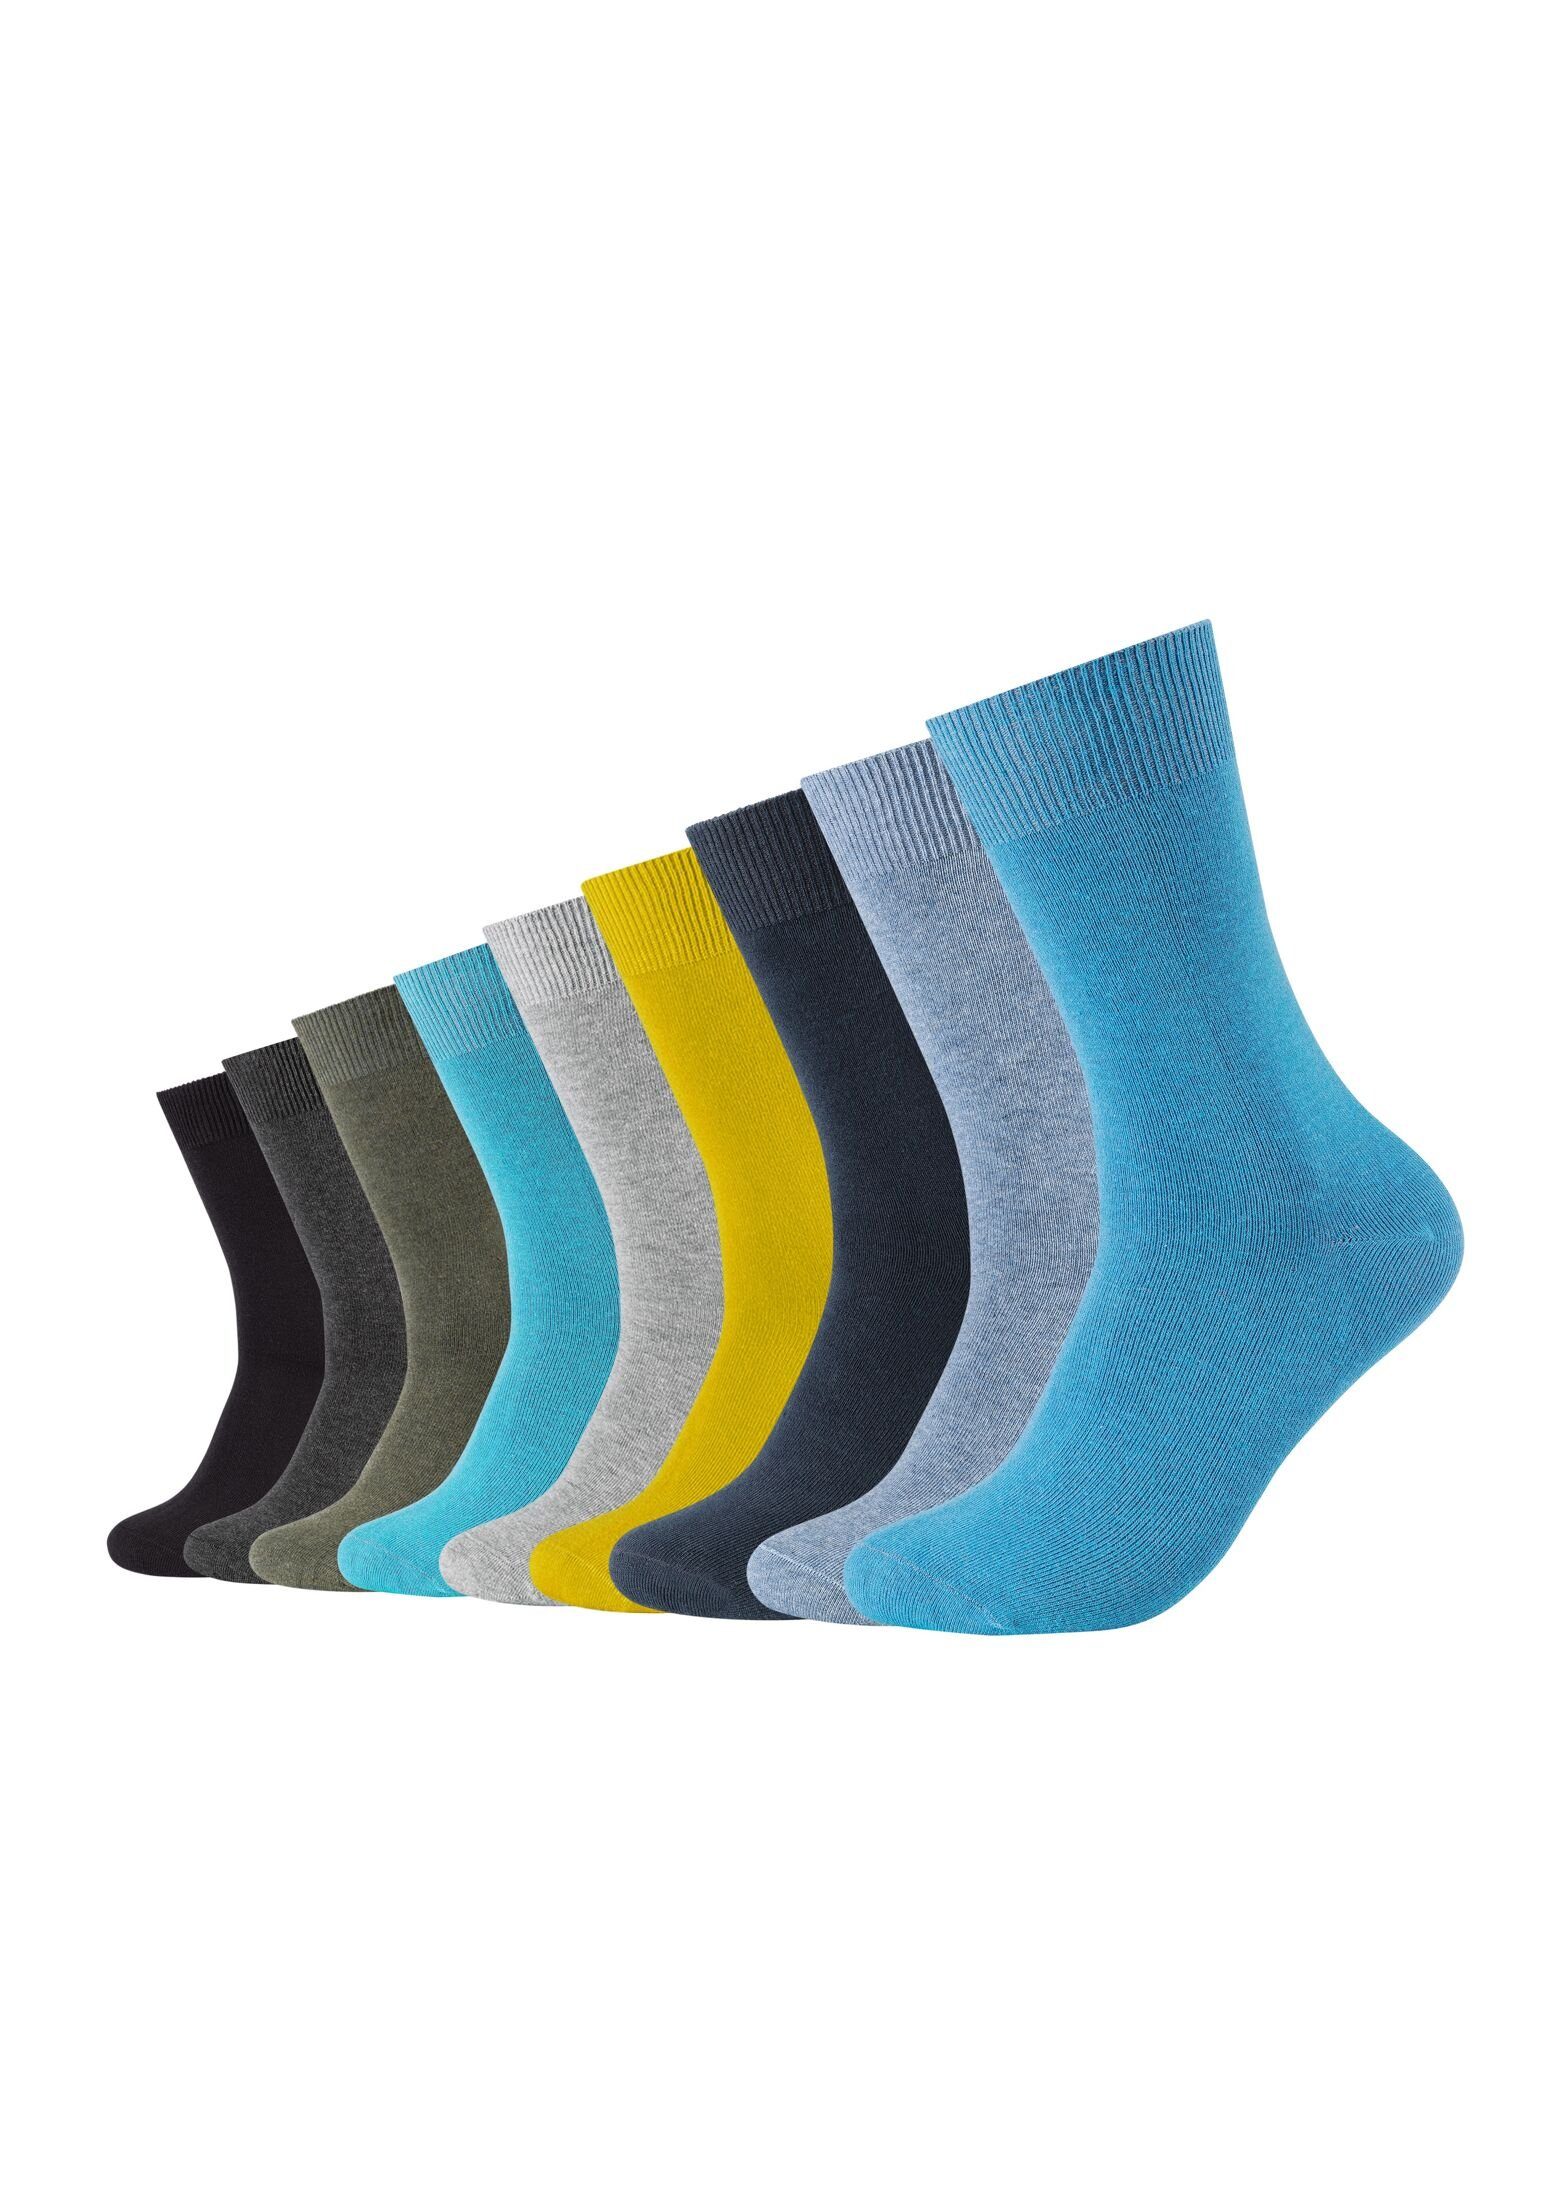 Camano Socken Socken 9er Pack turquoise